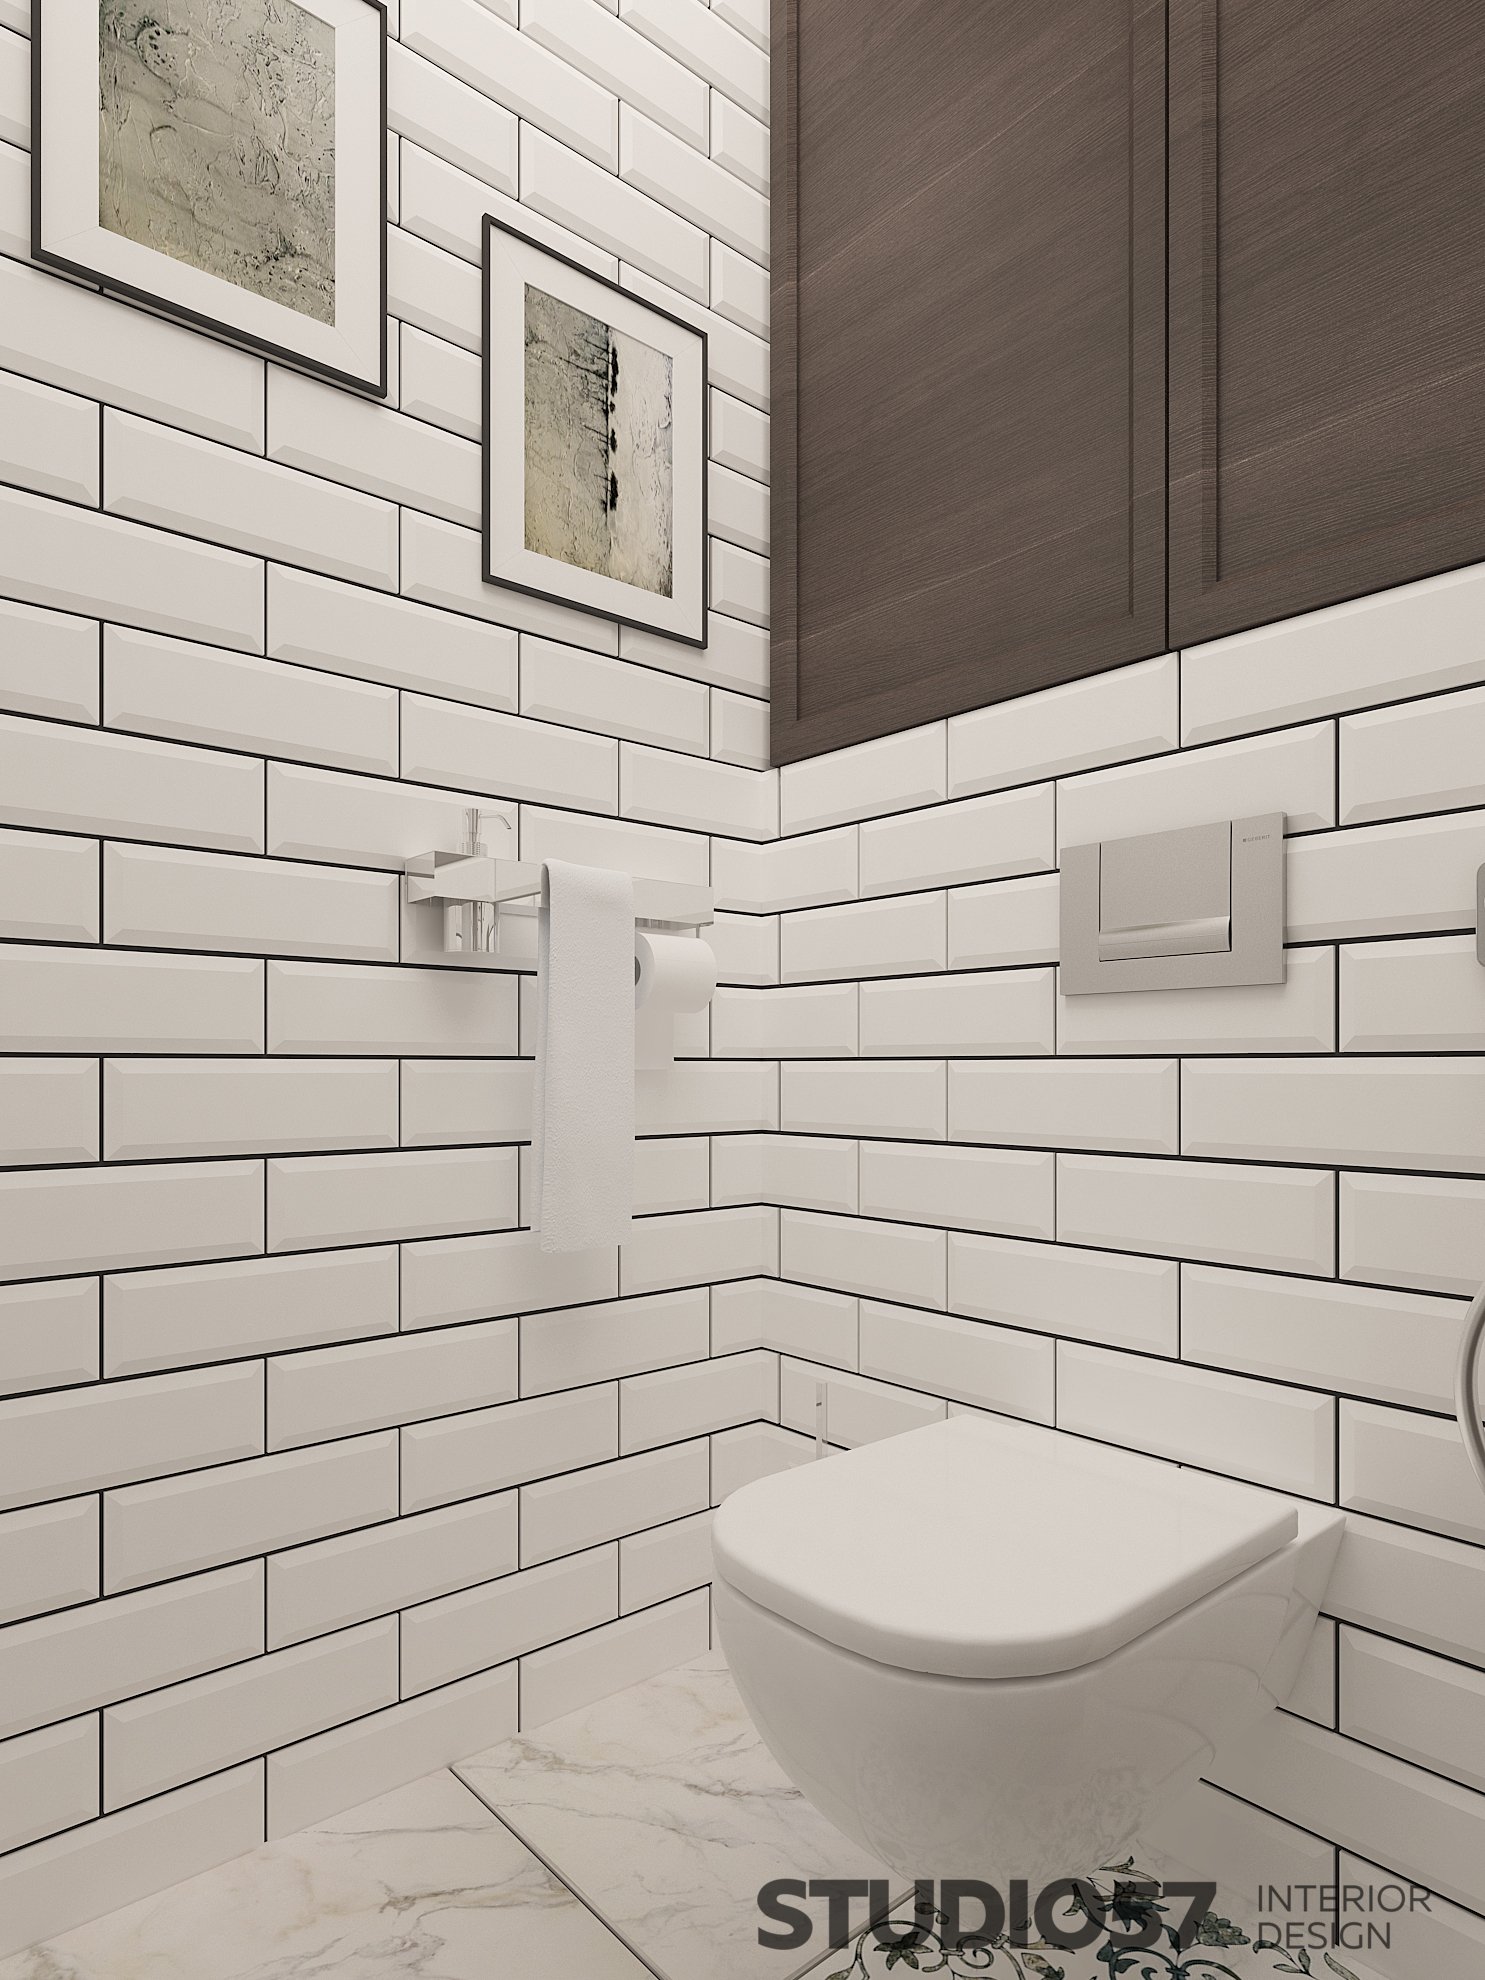 Toilet design with white rectangular tiles